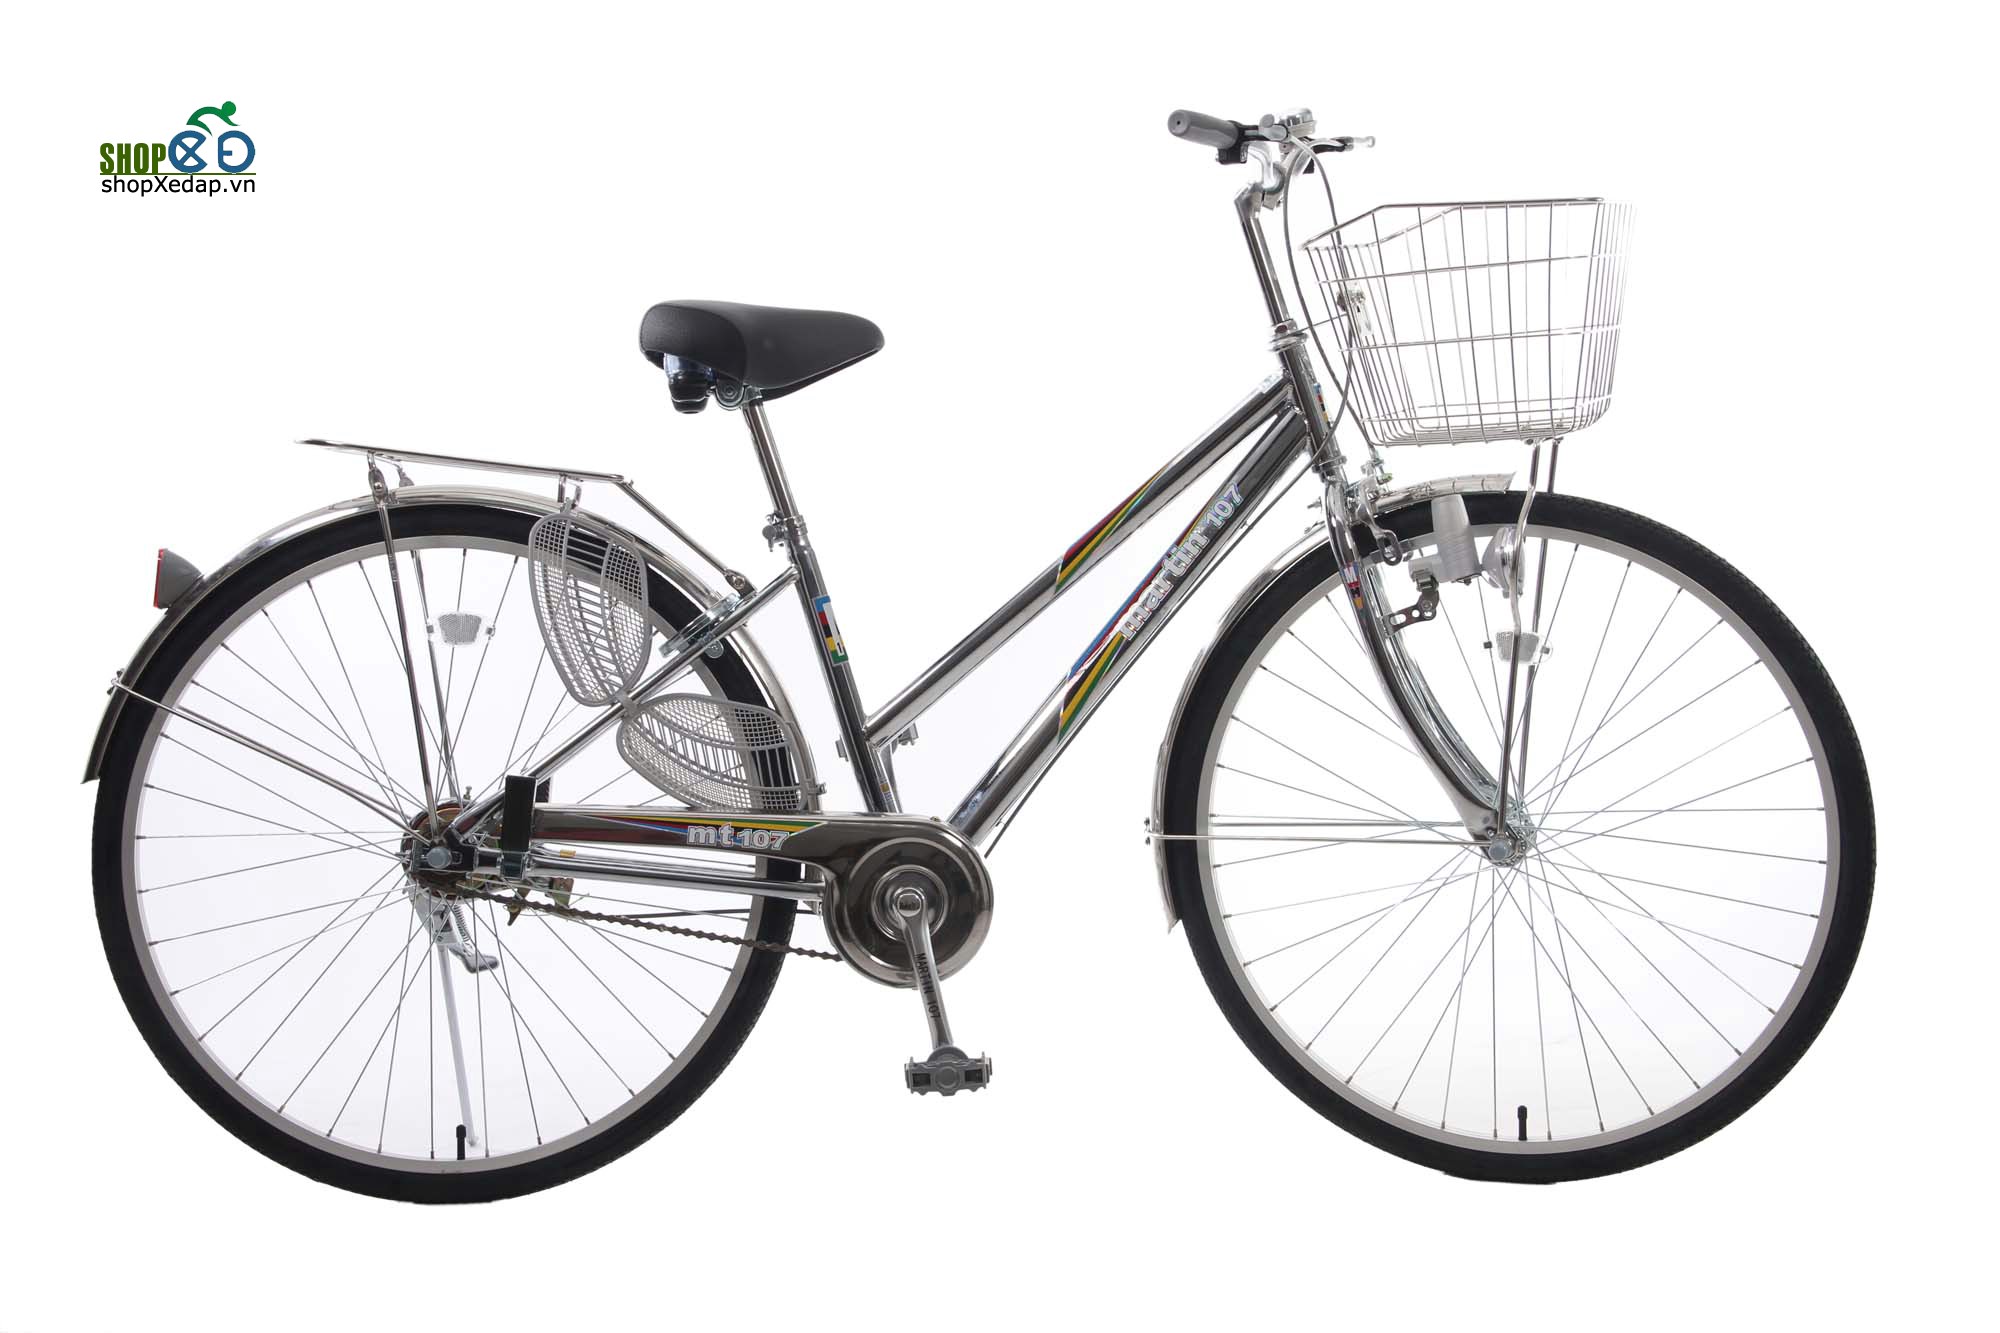 Xe đạp cào cào cũ giá sinh viên  320000đ  Nhật tảo